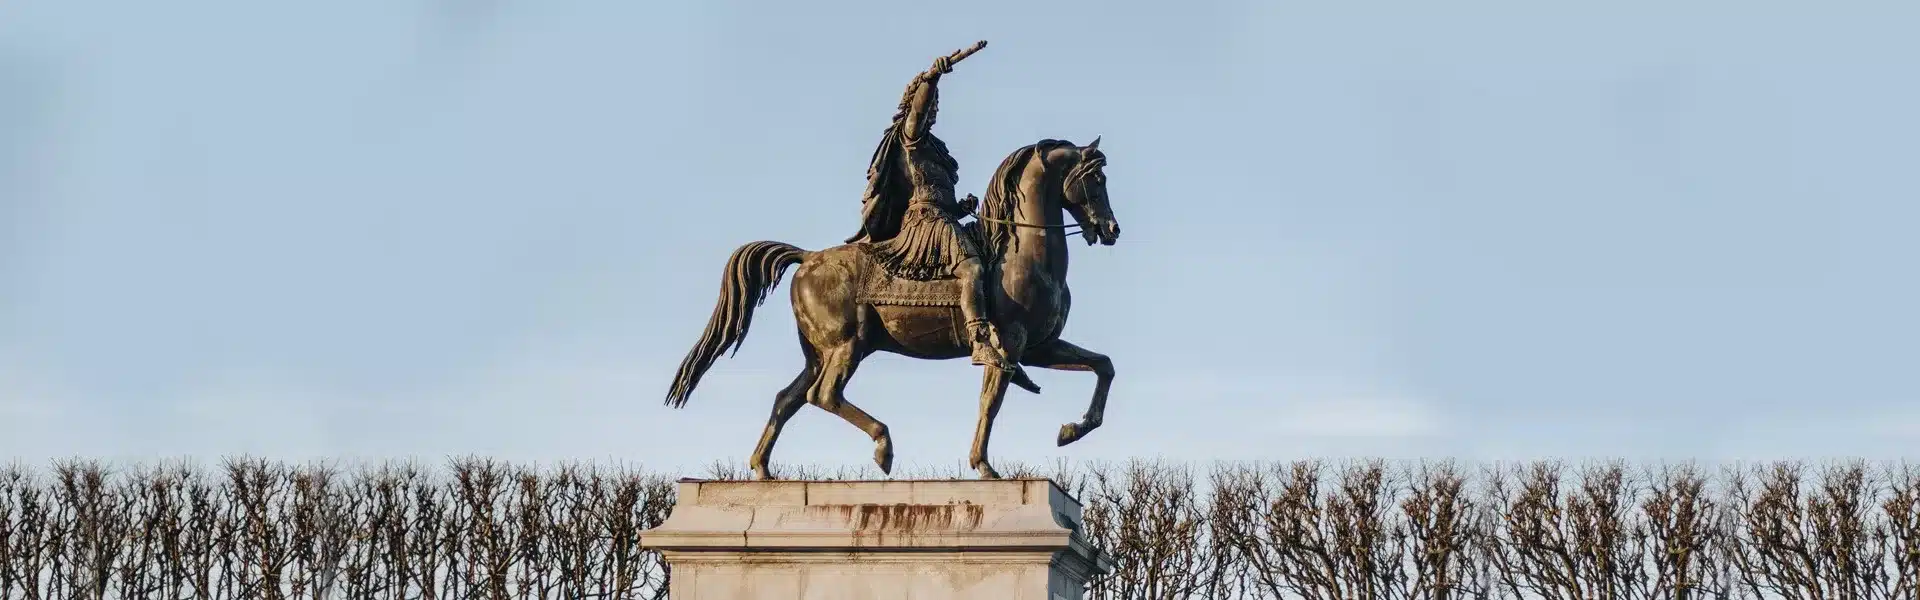 Montpellier promenade du Peyrou, place royale avec la statue équestre de Louis XIV (Hérault)